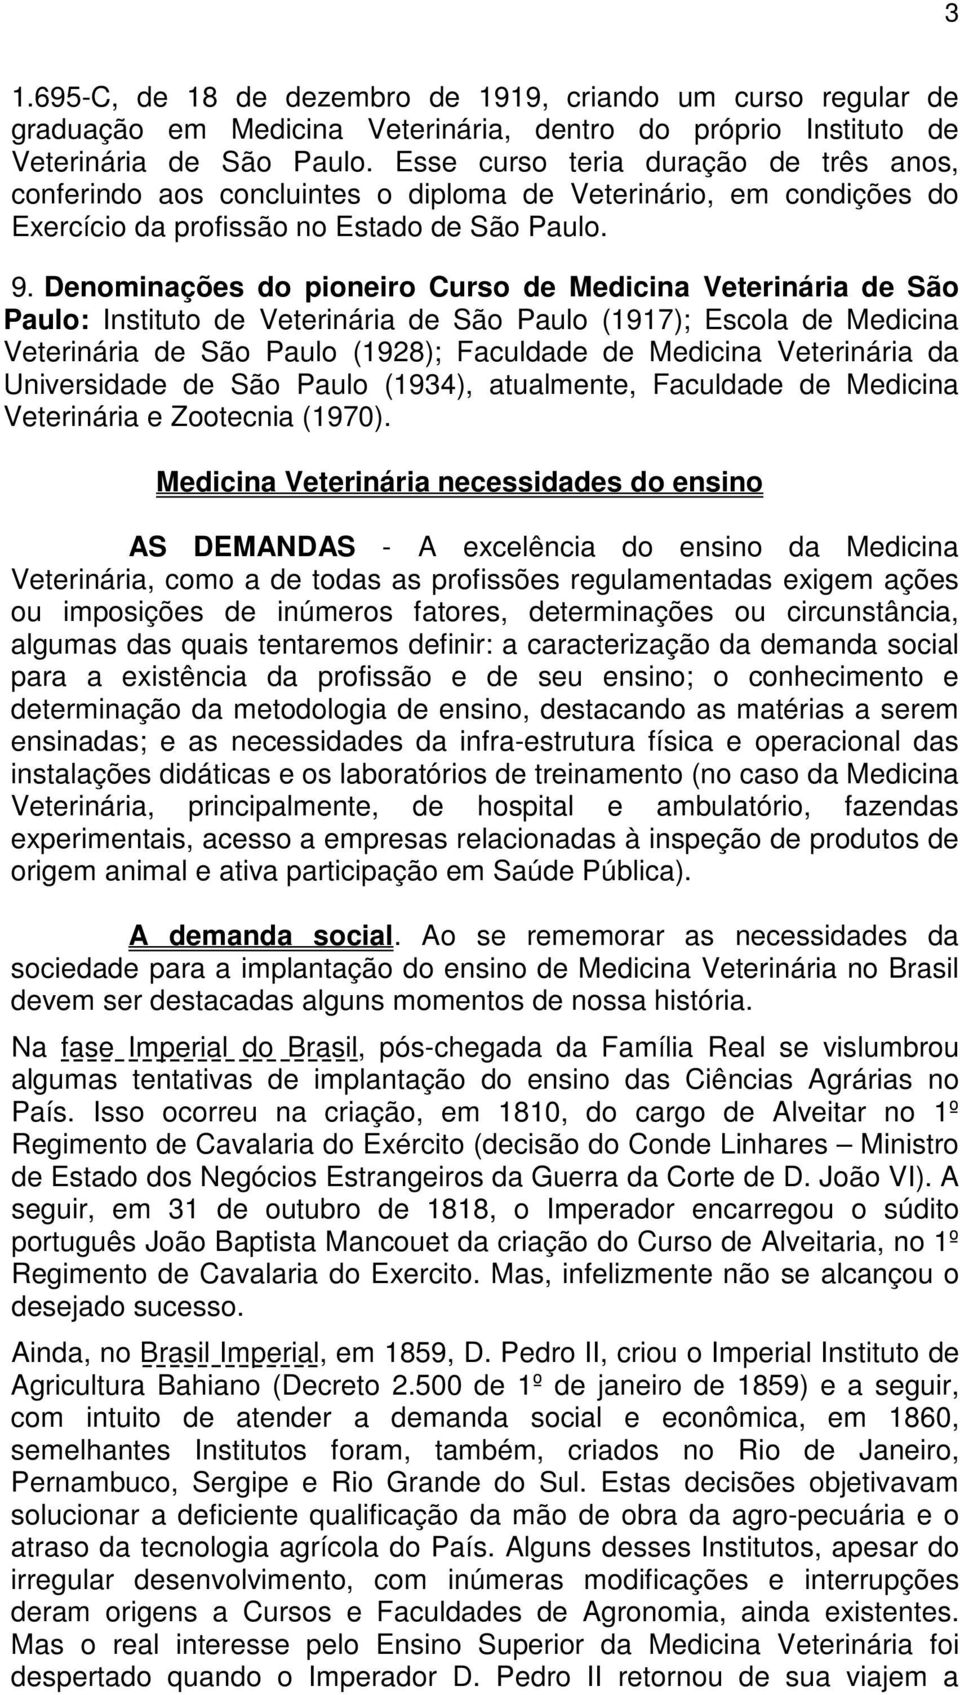 Denominações do pioneiro Curso de Medicina Veterinária de São Paulo: Instituto de Veterinária de São Paulo (1917); Escola de Medicina Veterinária de São Paulo (1928); Faculdade de Medicina